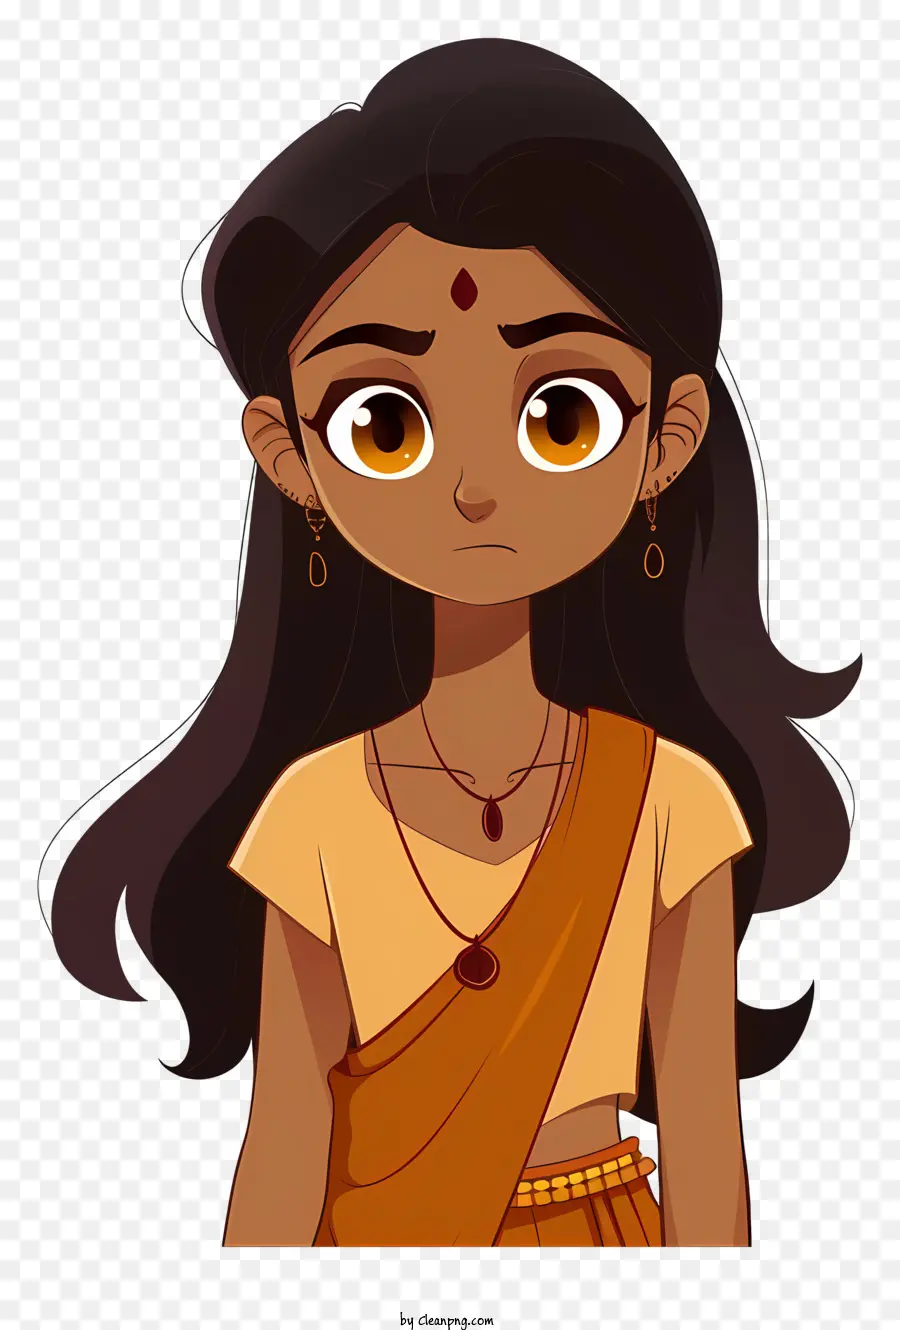 weißen hintergrund - Cartoon -Mädchen im orangefarbenen Sari, ausdrucksstarke Augen